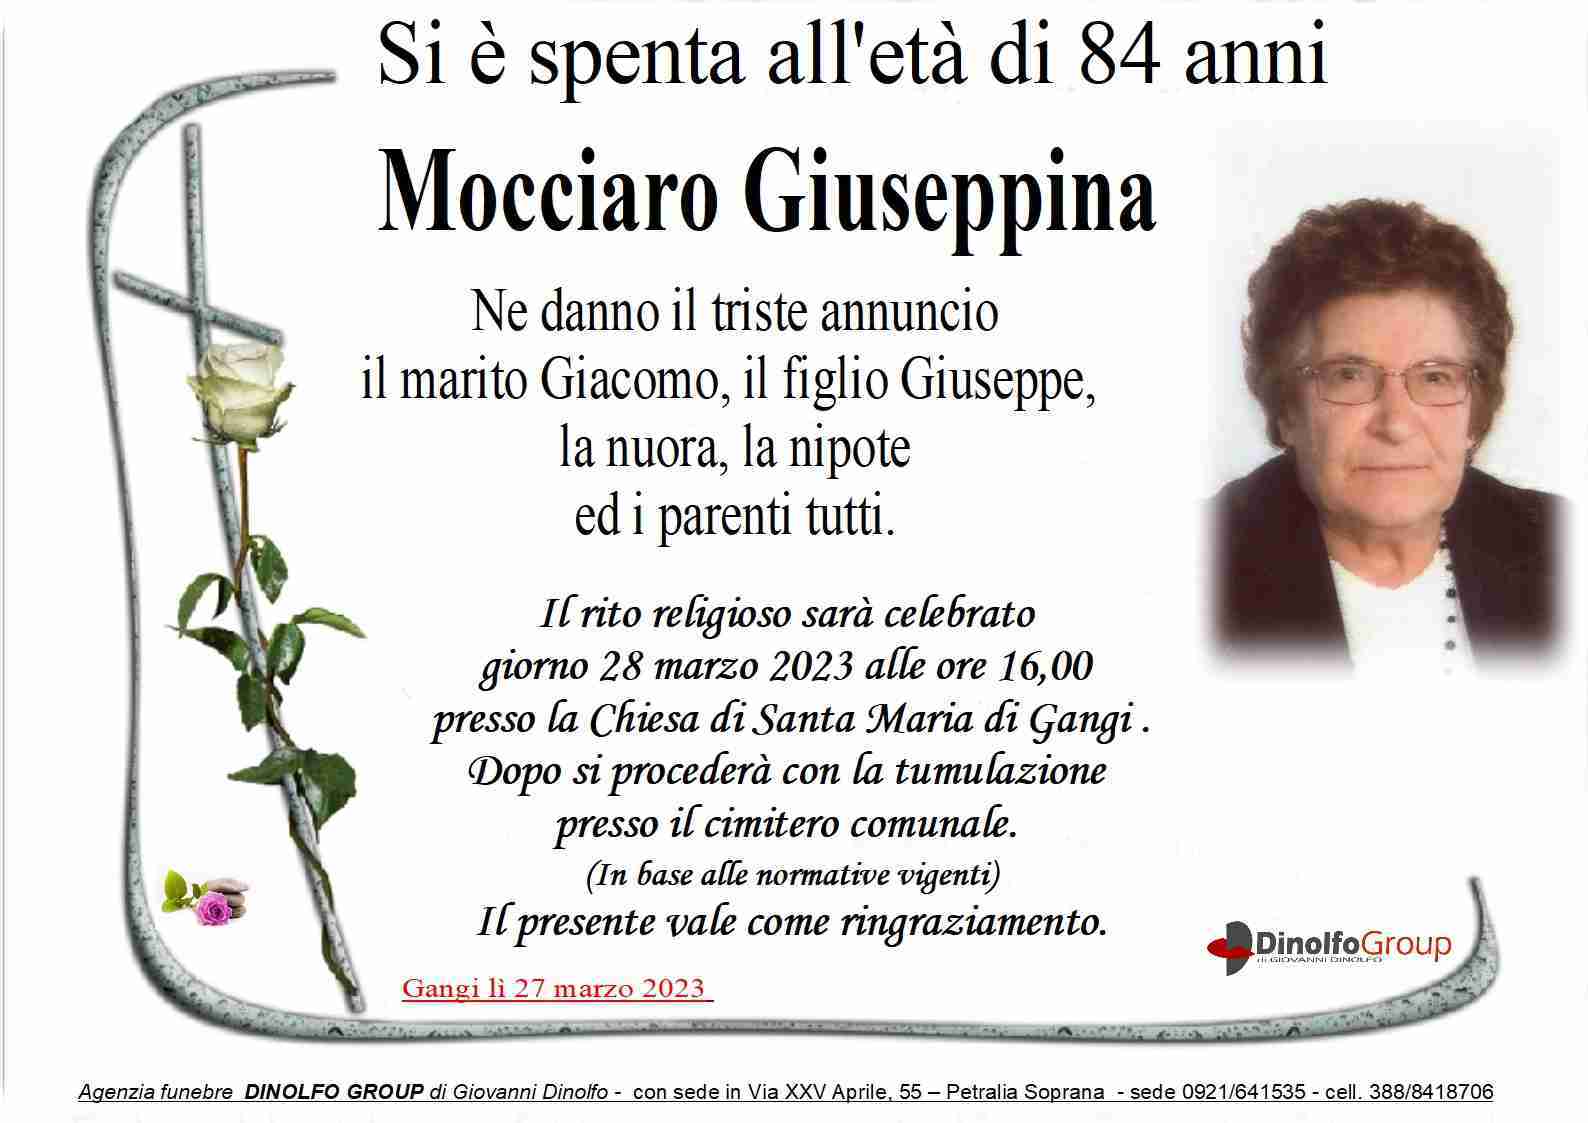 Mocciaro Giuseppina